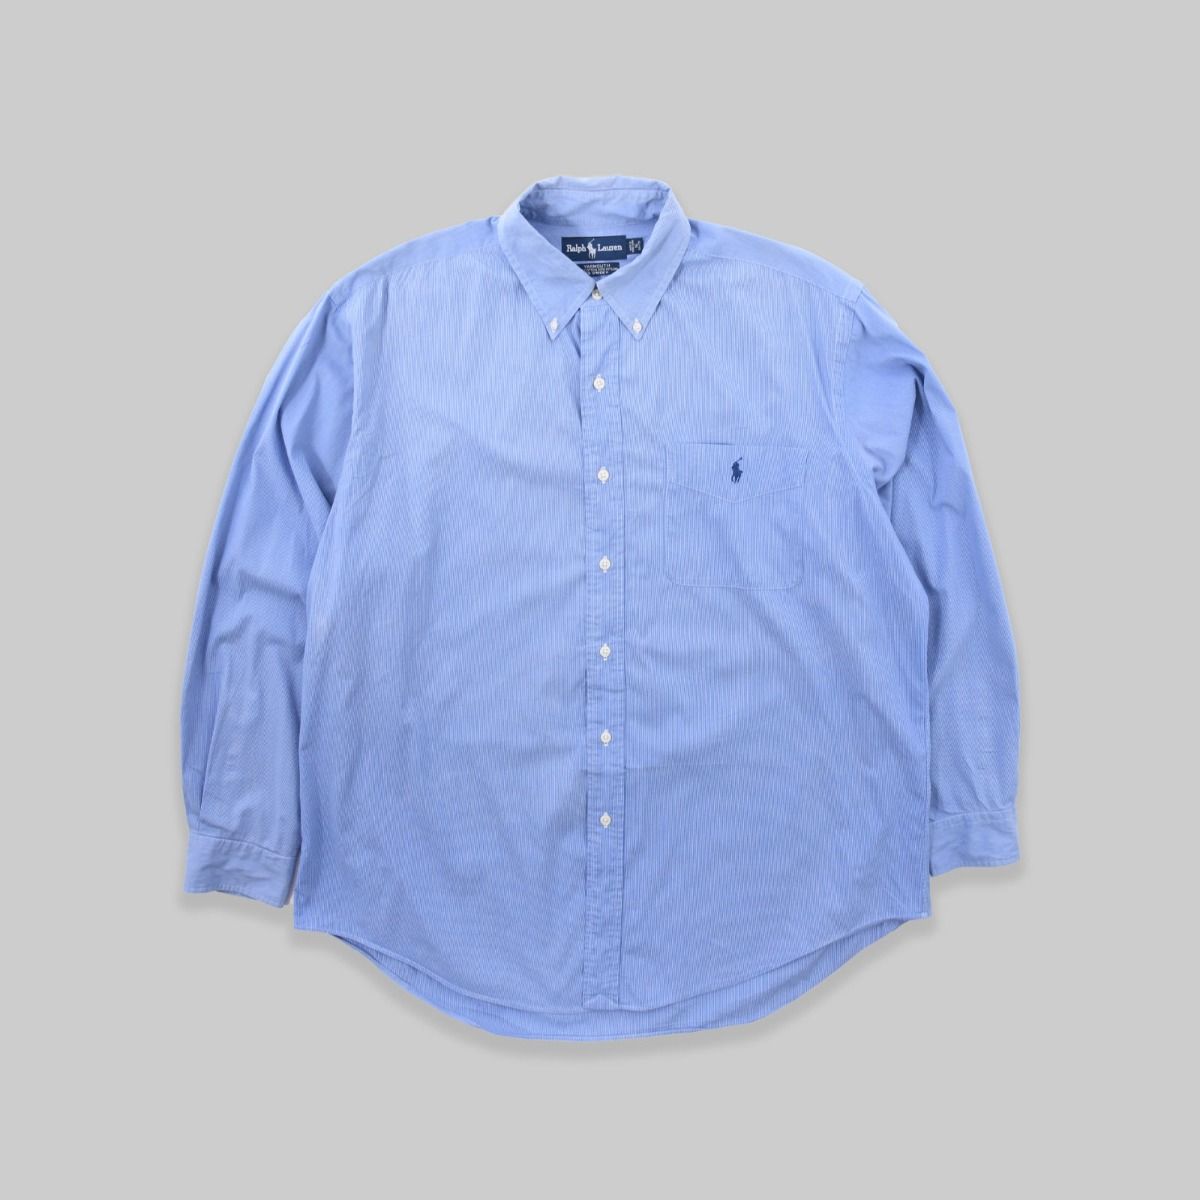 Ralph Lauren Yarmouth Blue Shirt